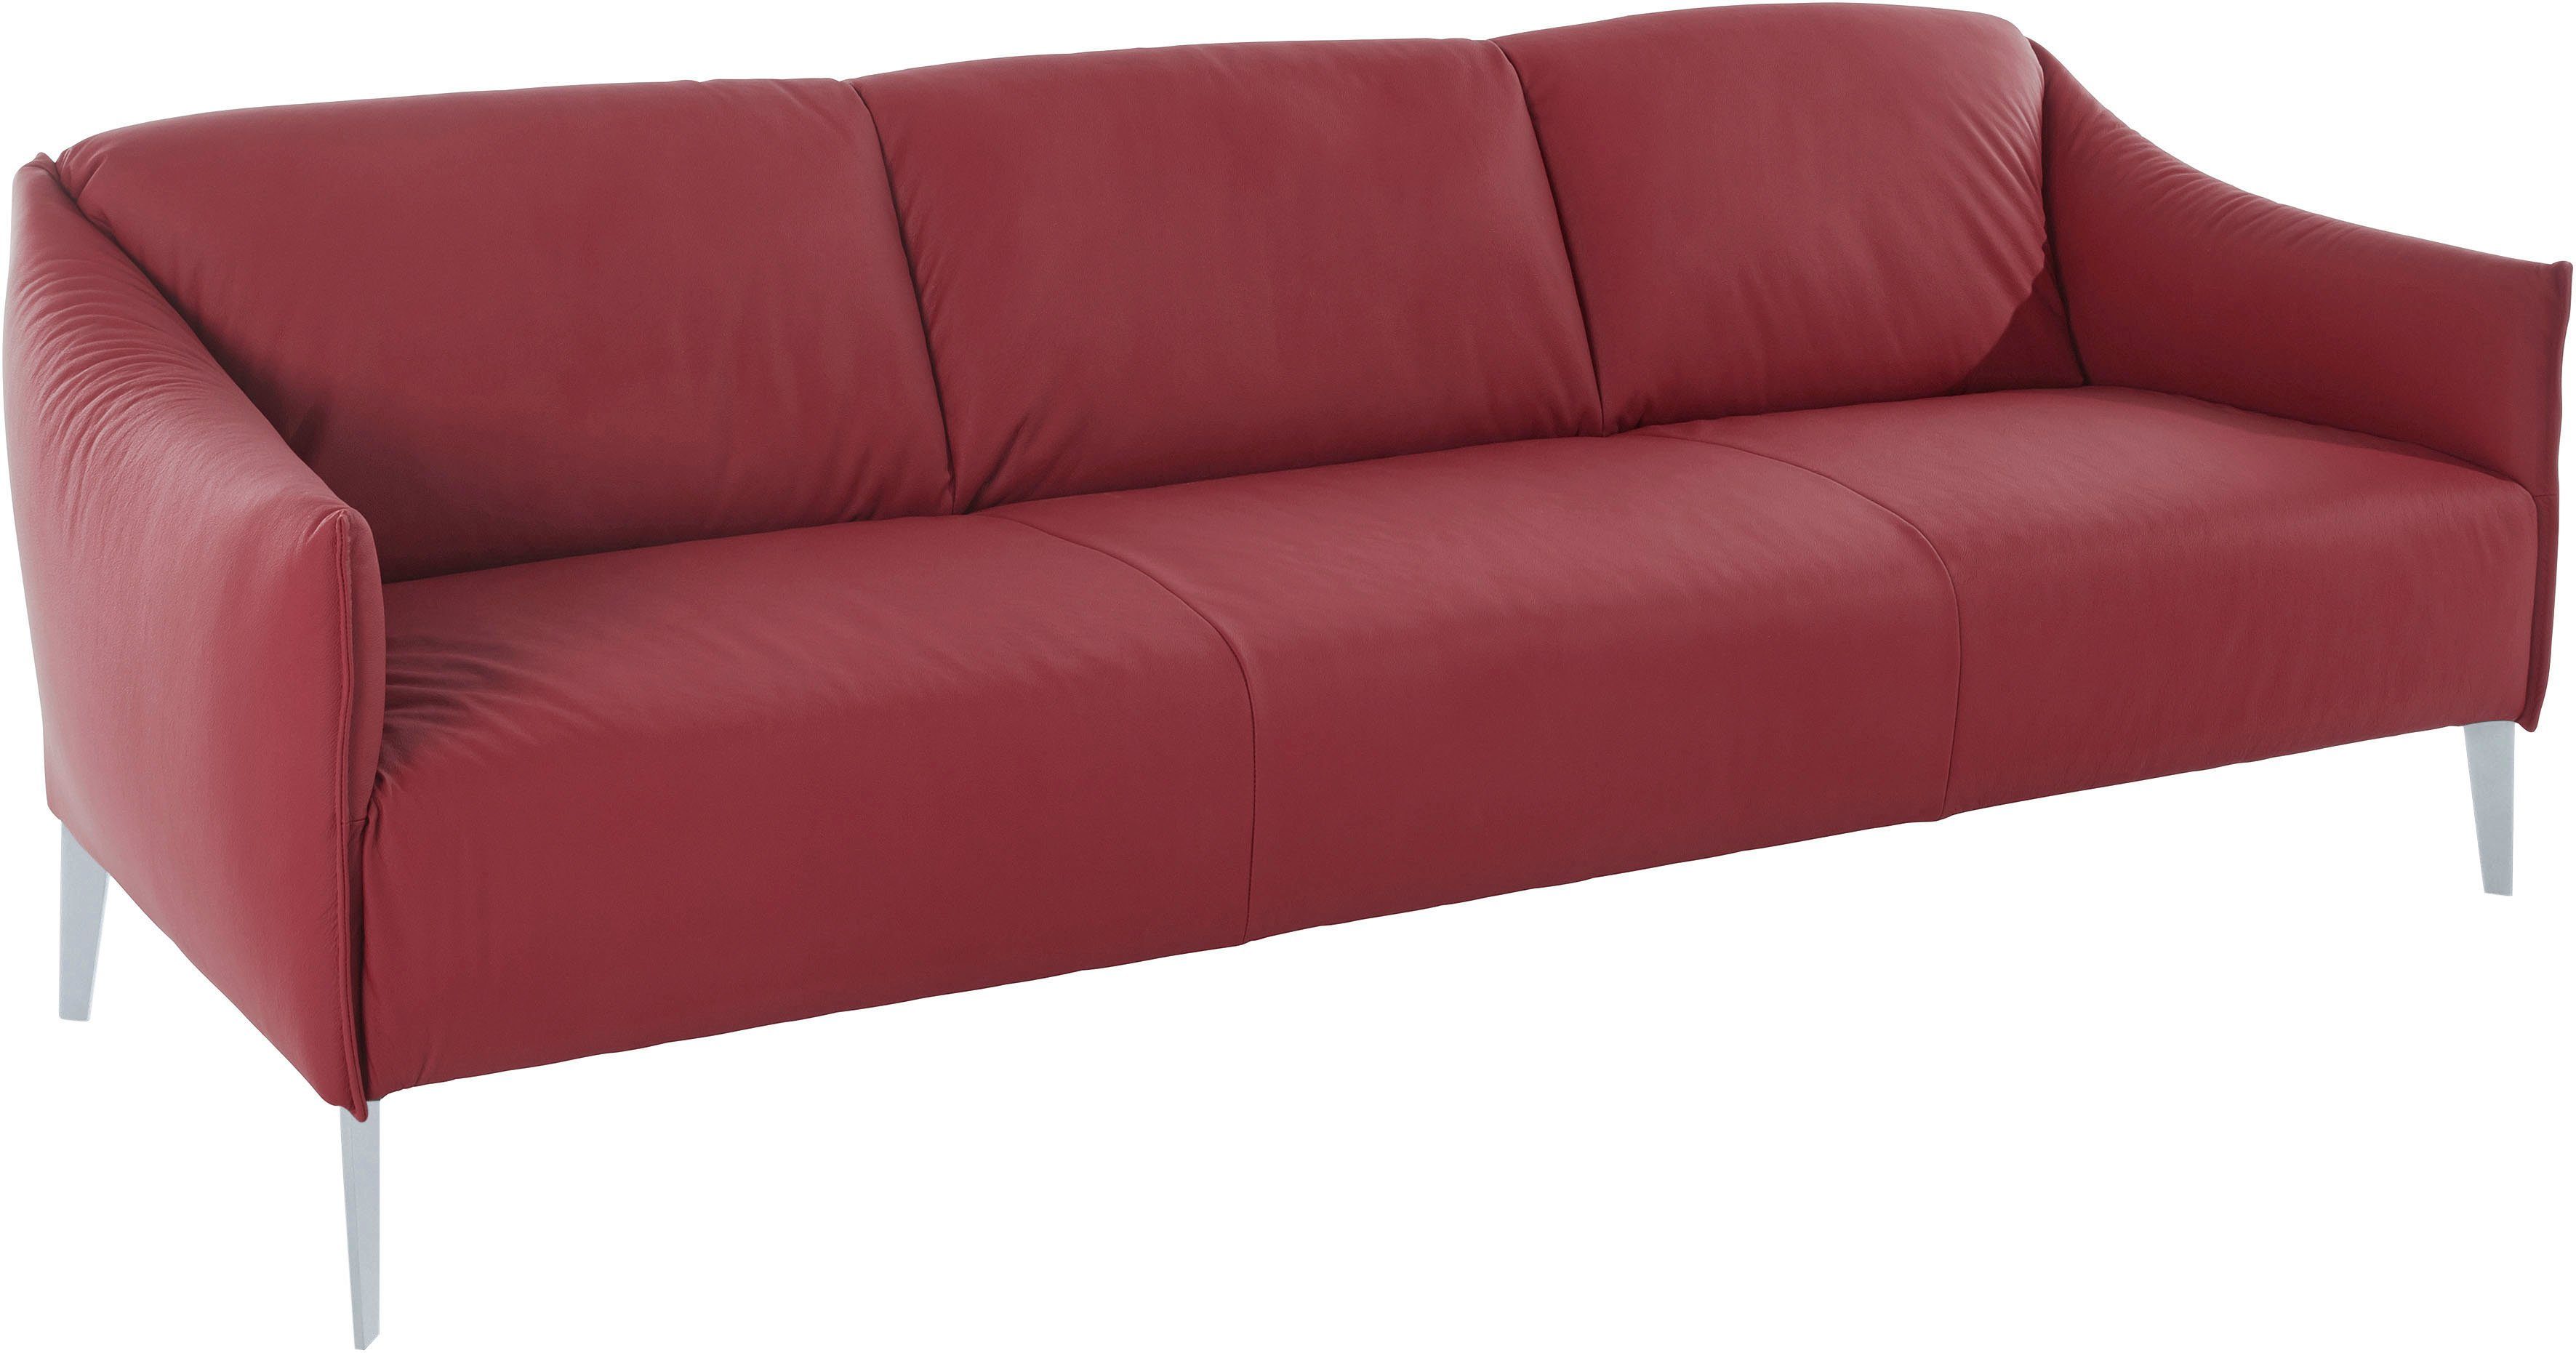 W.SCHILLIG 3-Sitzer sally, mit Metall-Winkelfüßen Silber in red 224 Z59 matt, cm Breite ruby